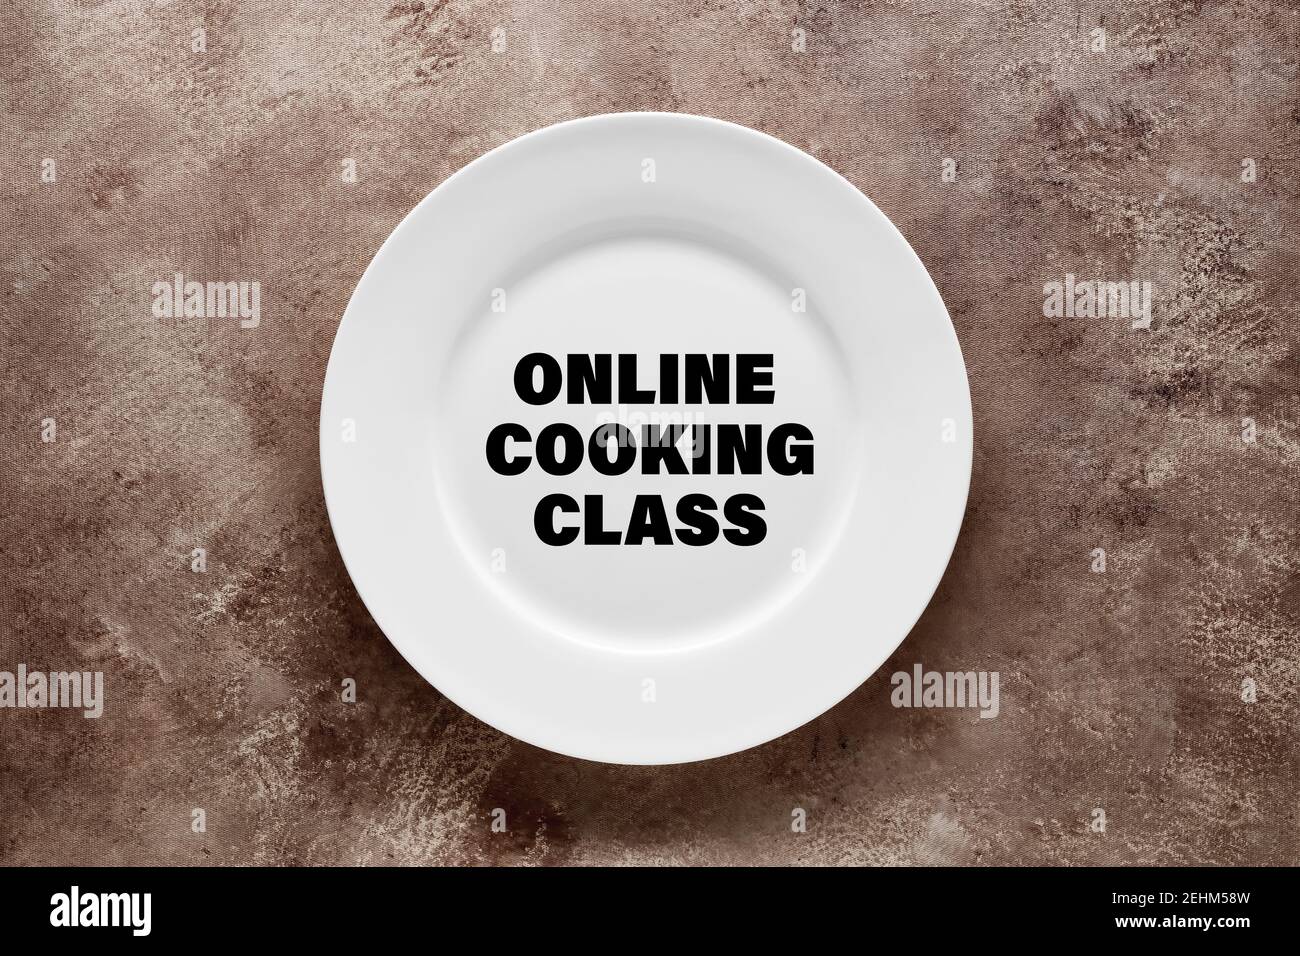 La palabra clase de cocina en línea escrita en un plato blanco. Concepto de formación o formación en línea. Foto de stock